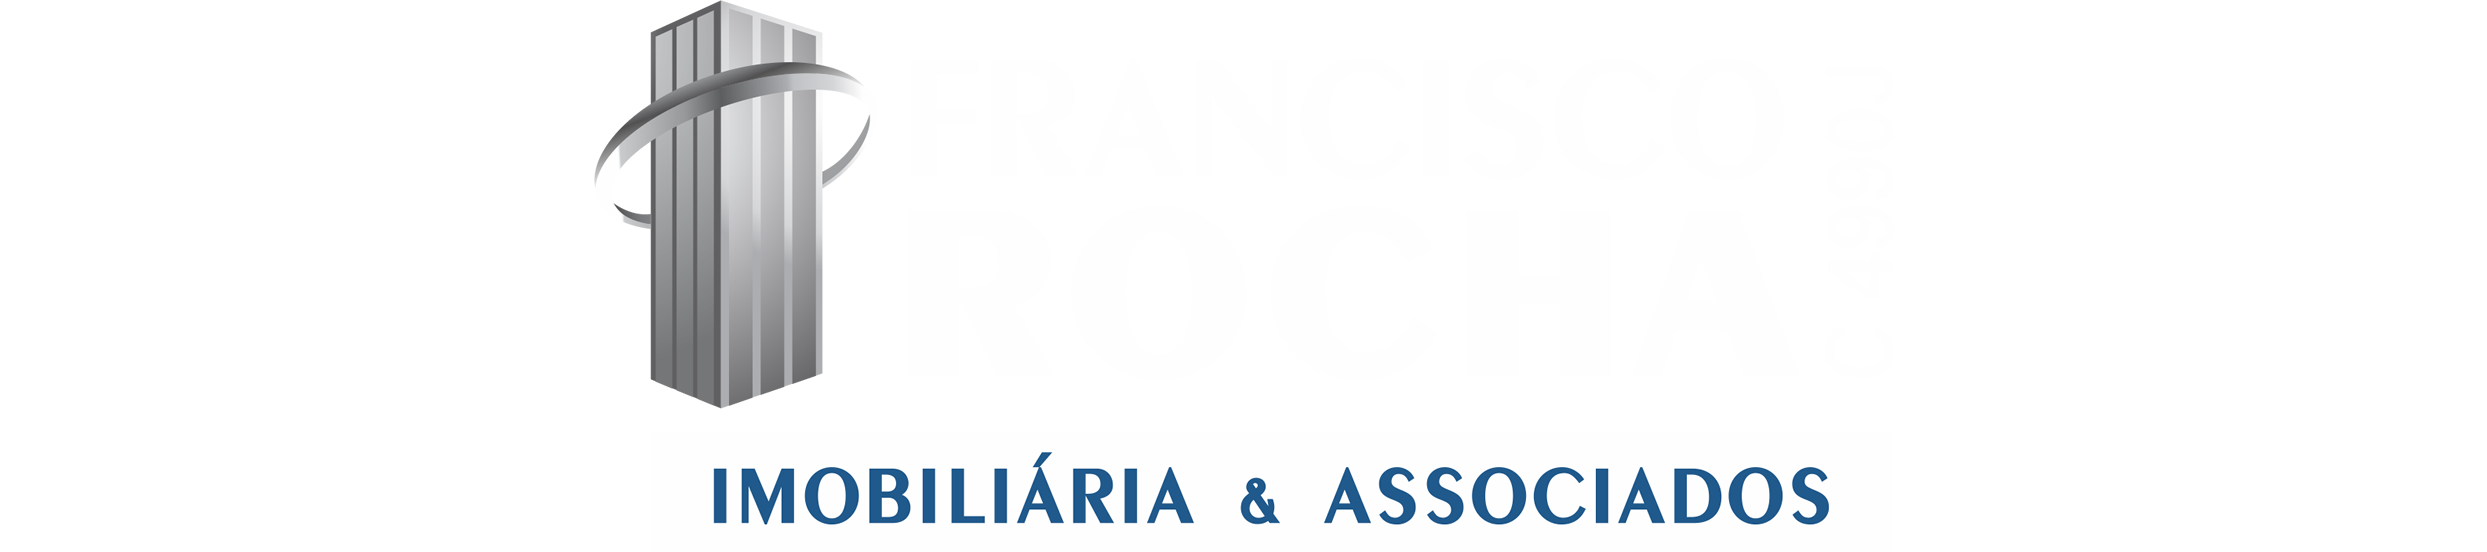 Francisco Rocha Imobiliária & Associados 